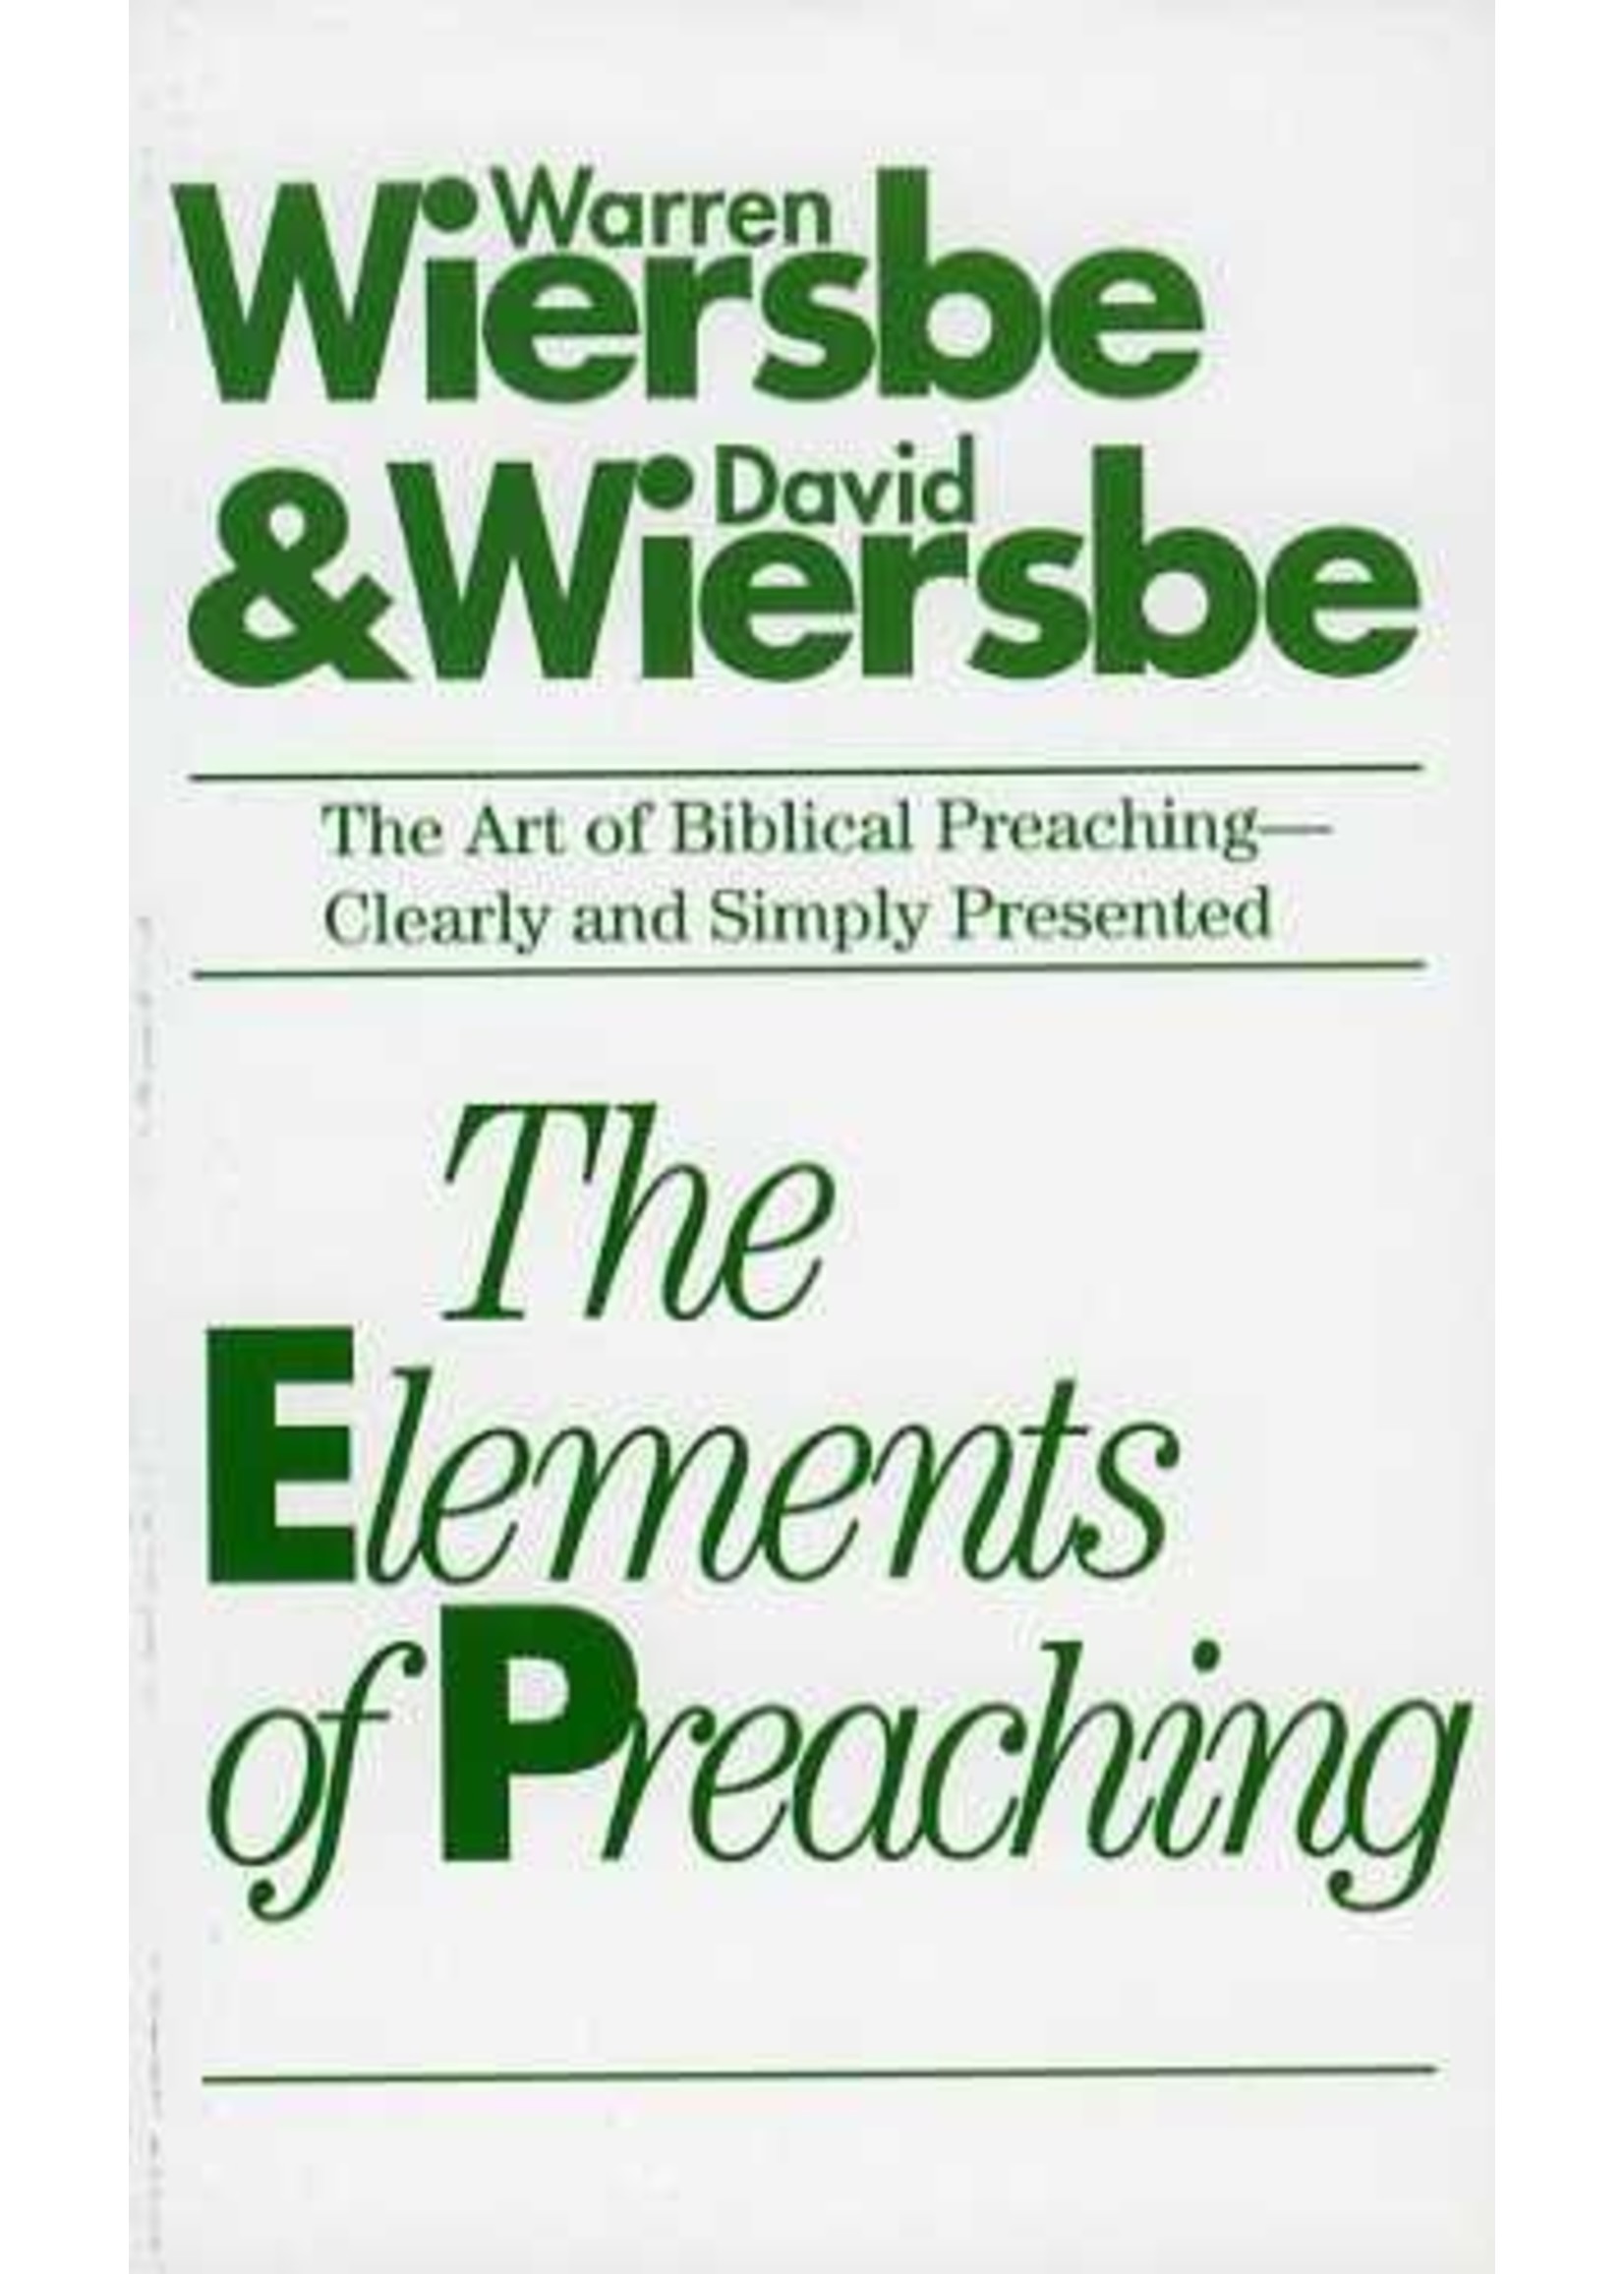 Tyndale The Elements of Preaching - Warren Wiersbe & David Wiersbe